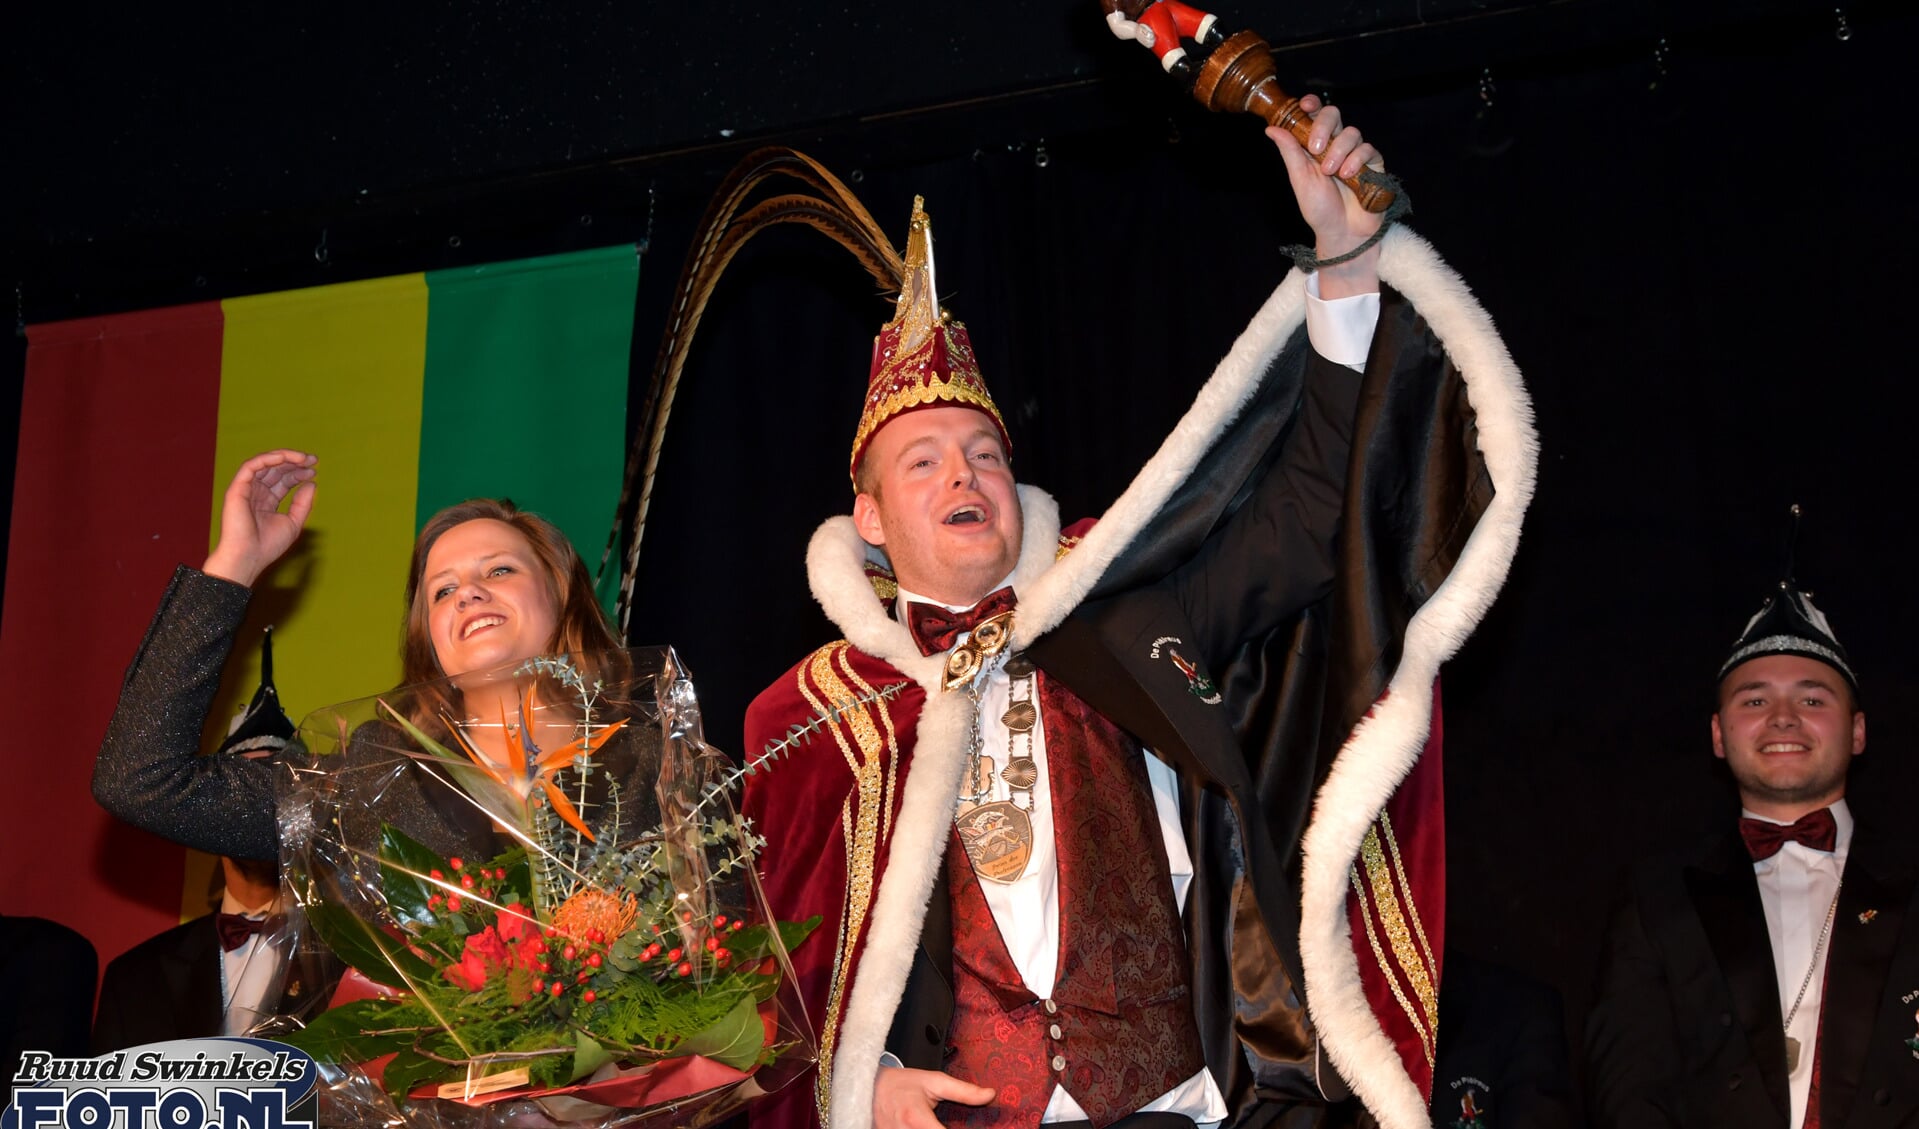 Prins Jelle I en prinses Mariska. Foto: Ruudswinkelsfoto.nl.